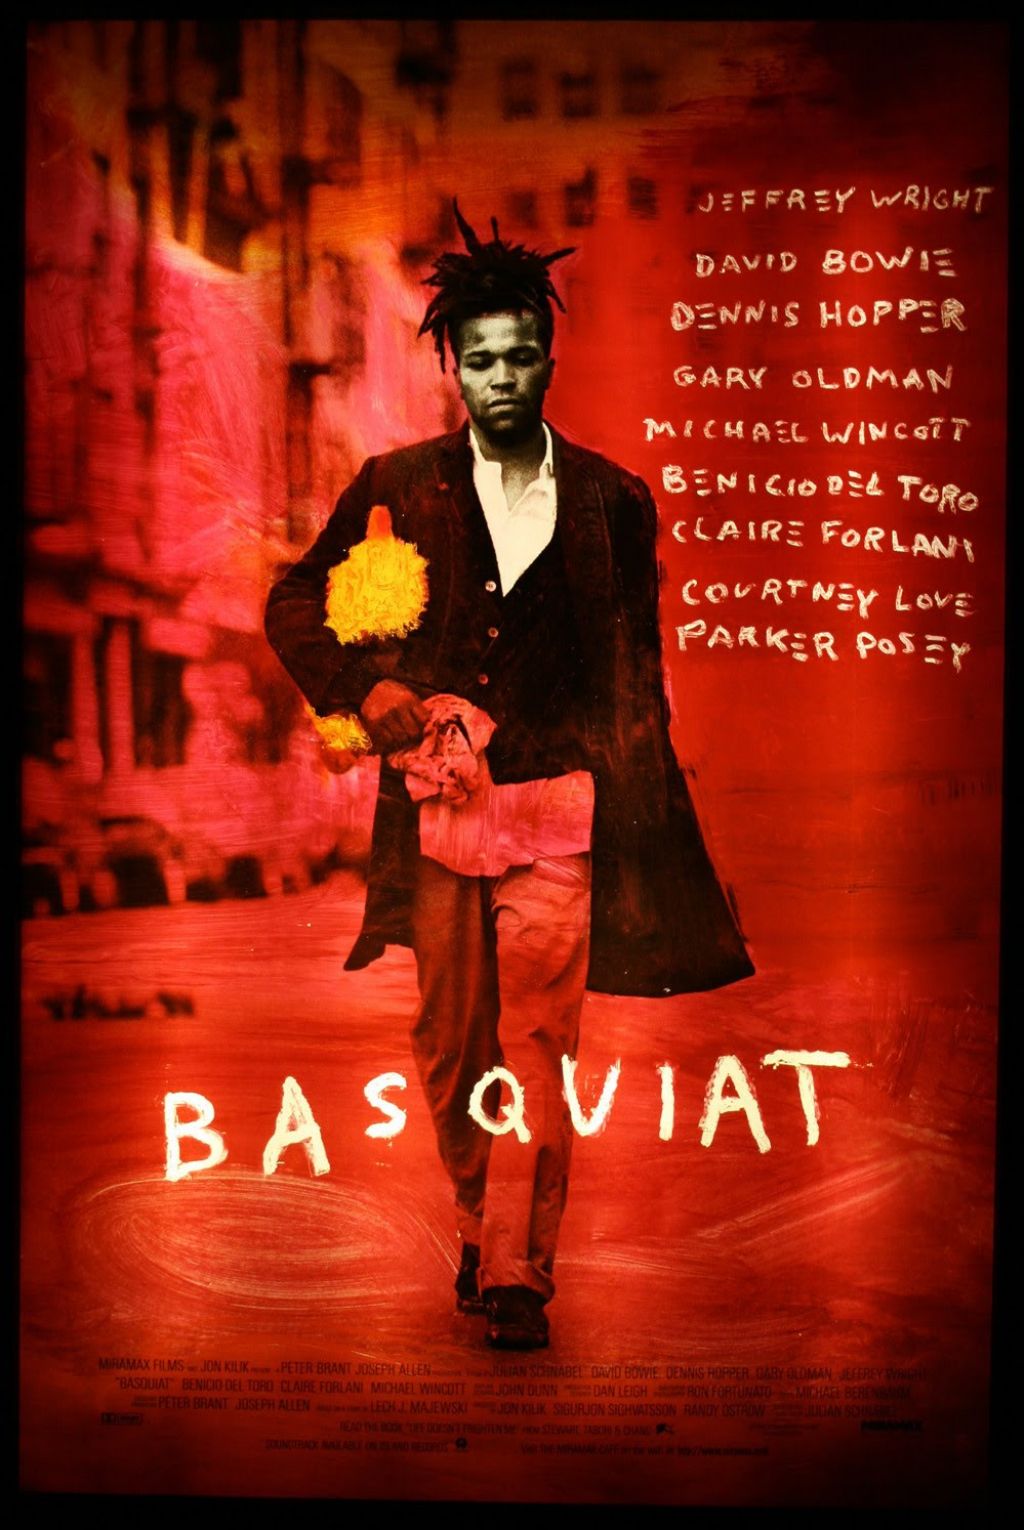 Basquiat et le 7e art